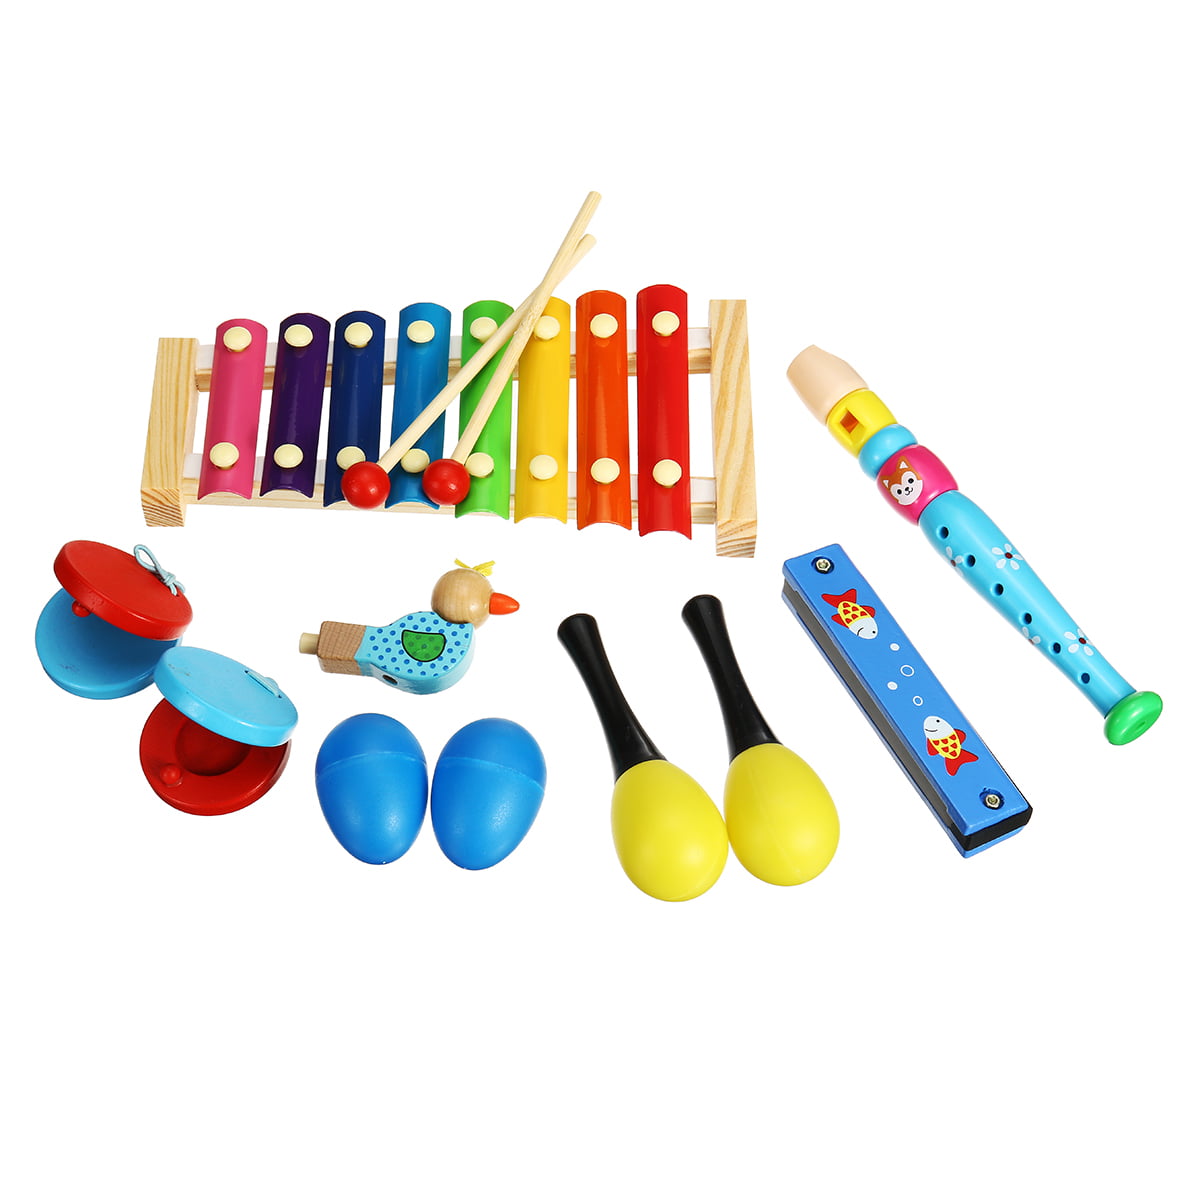 children's music instruments toys